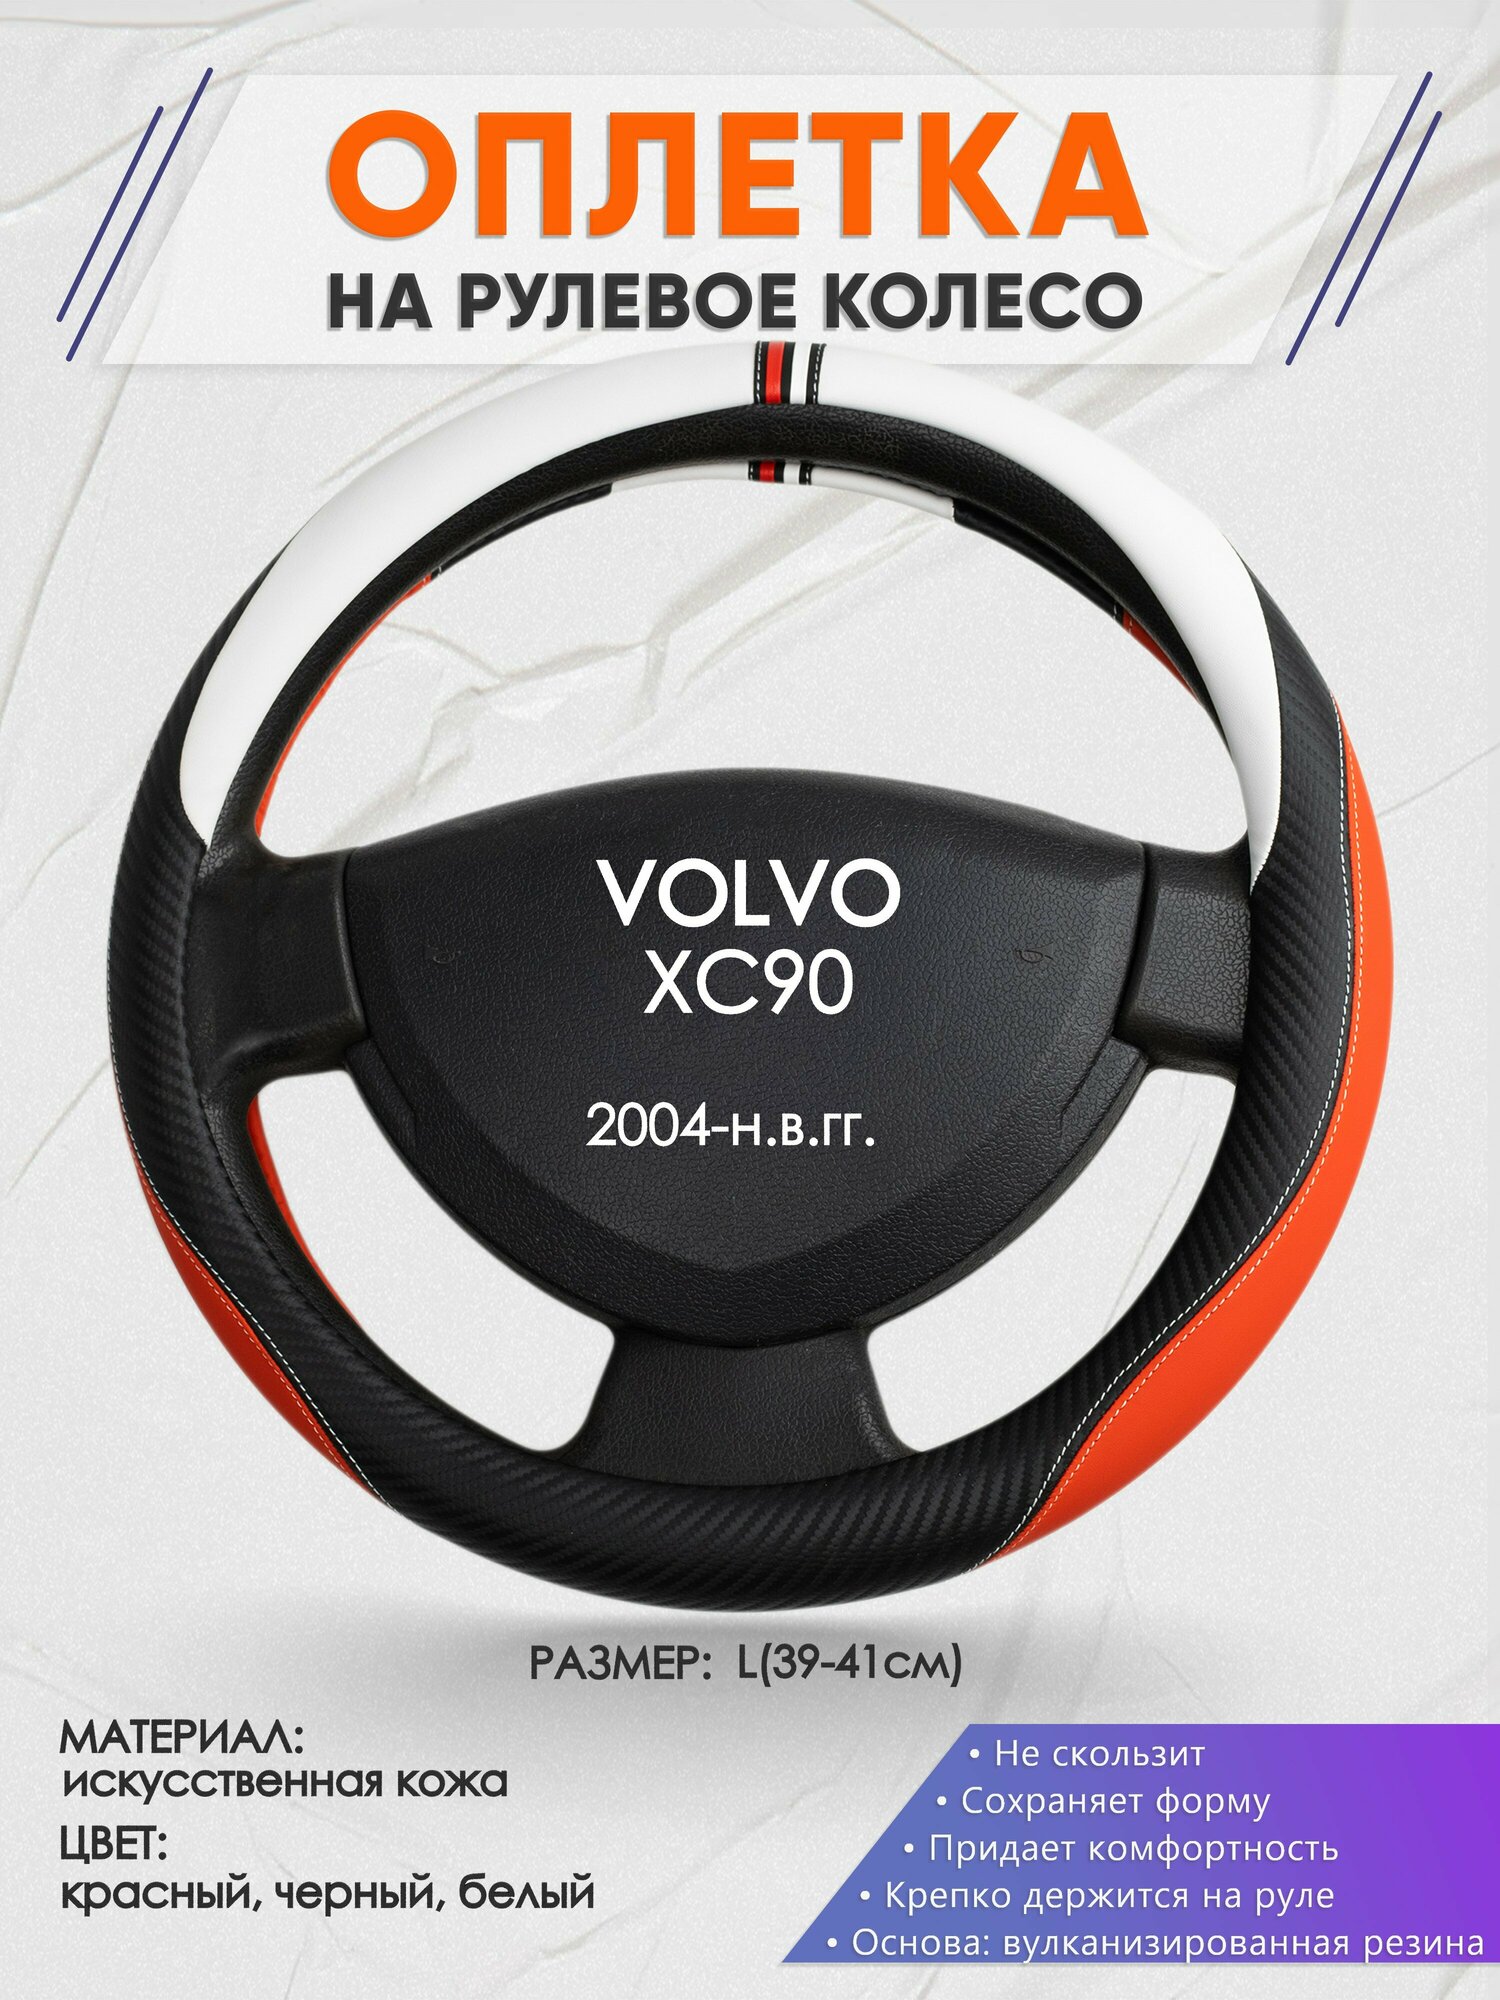 Оплетка на руль для VOLVO XC90(Вольво иксс90) 2004-н.в., L(39-41см), Искусственная кожа 55